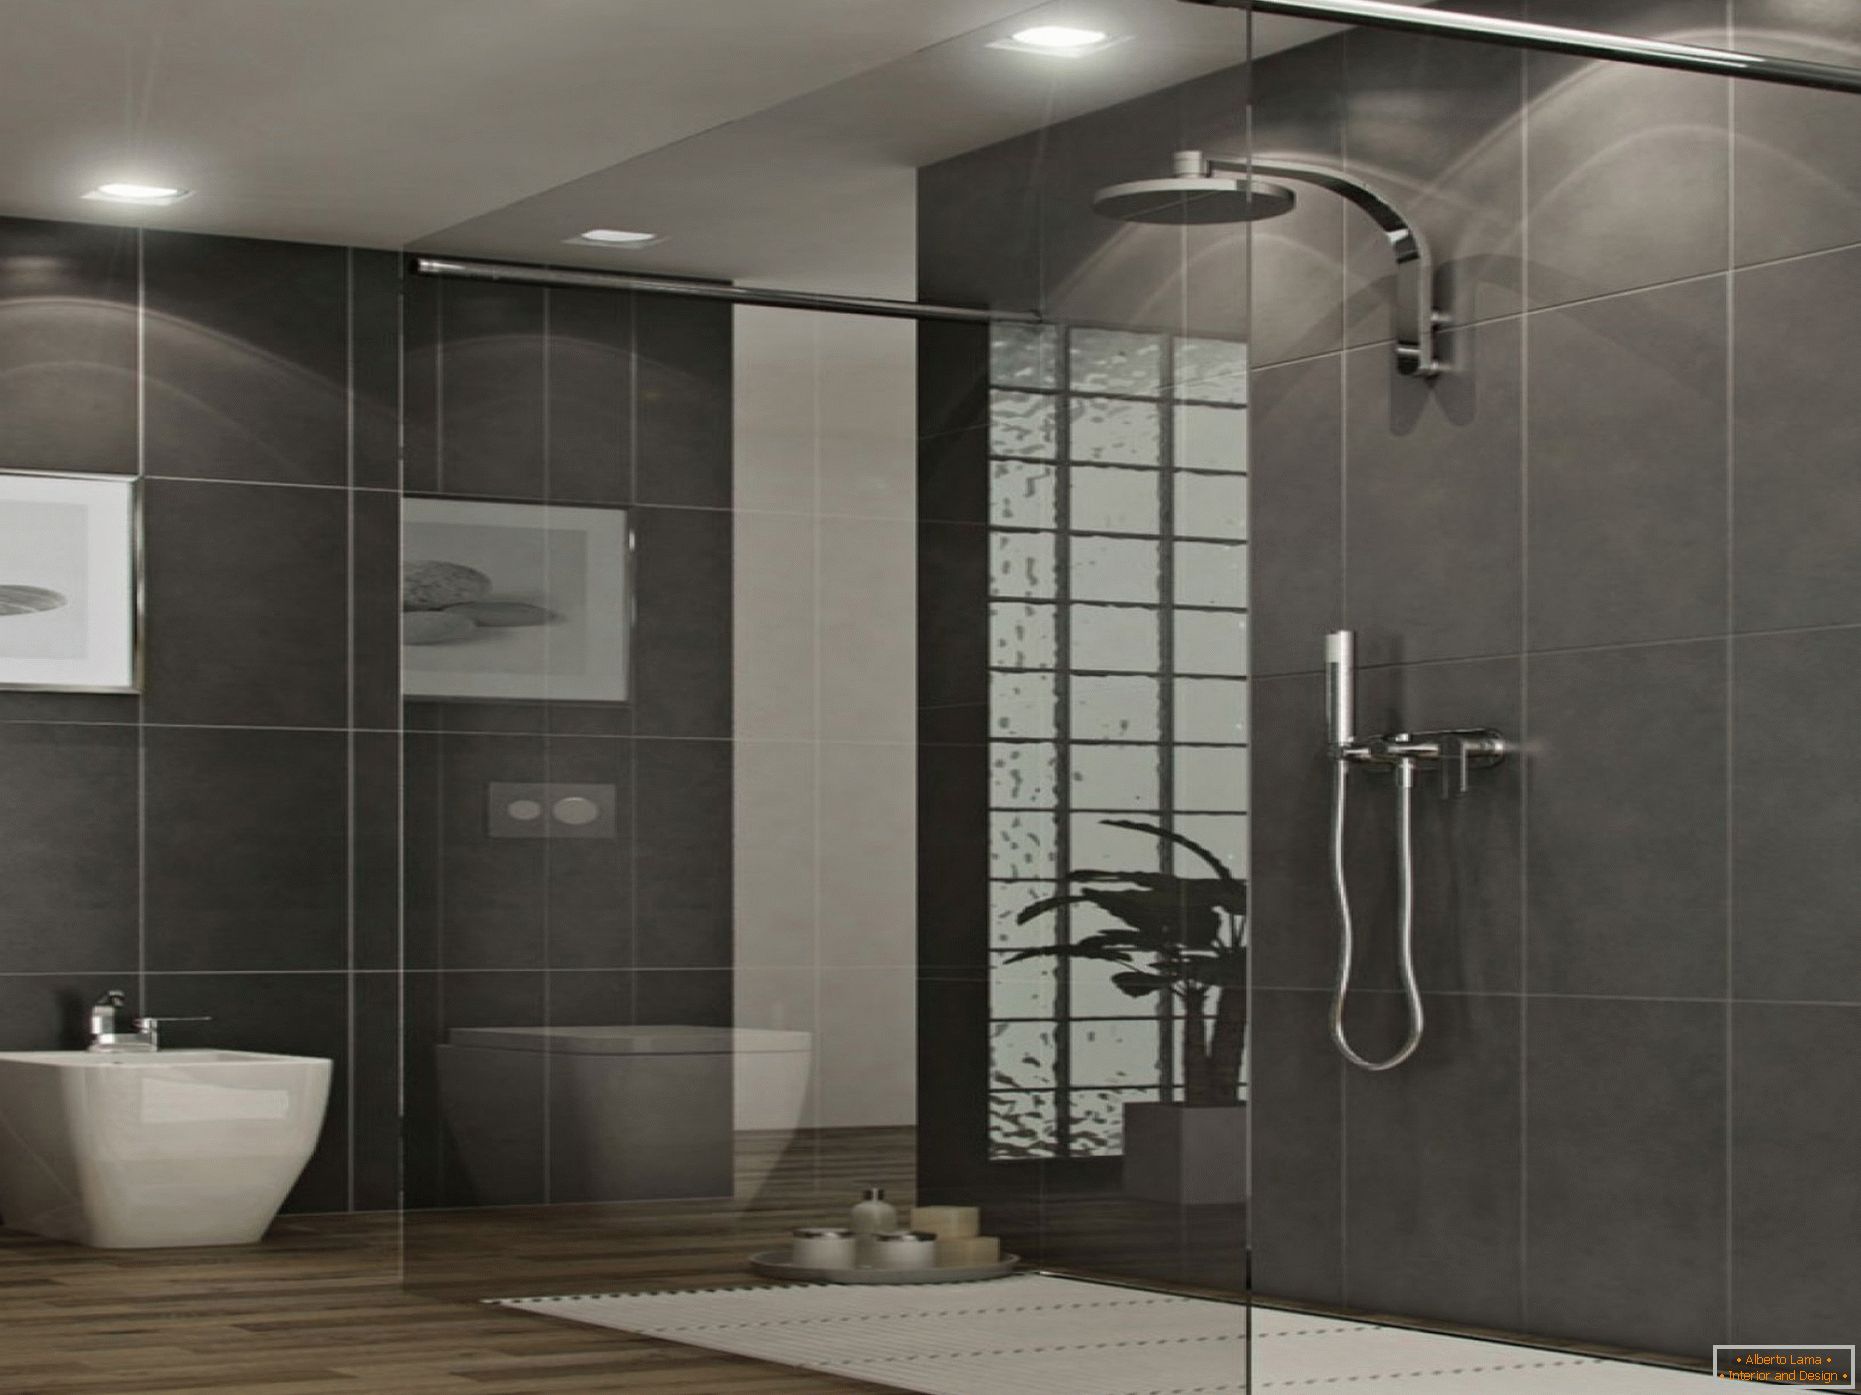 Grande casa de banho com paredes pretas e piso bege